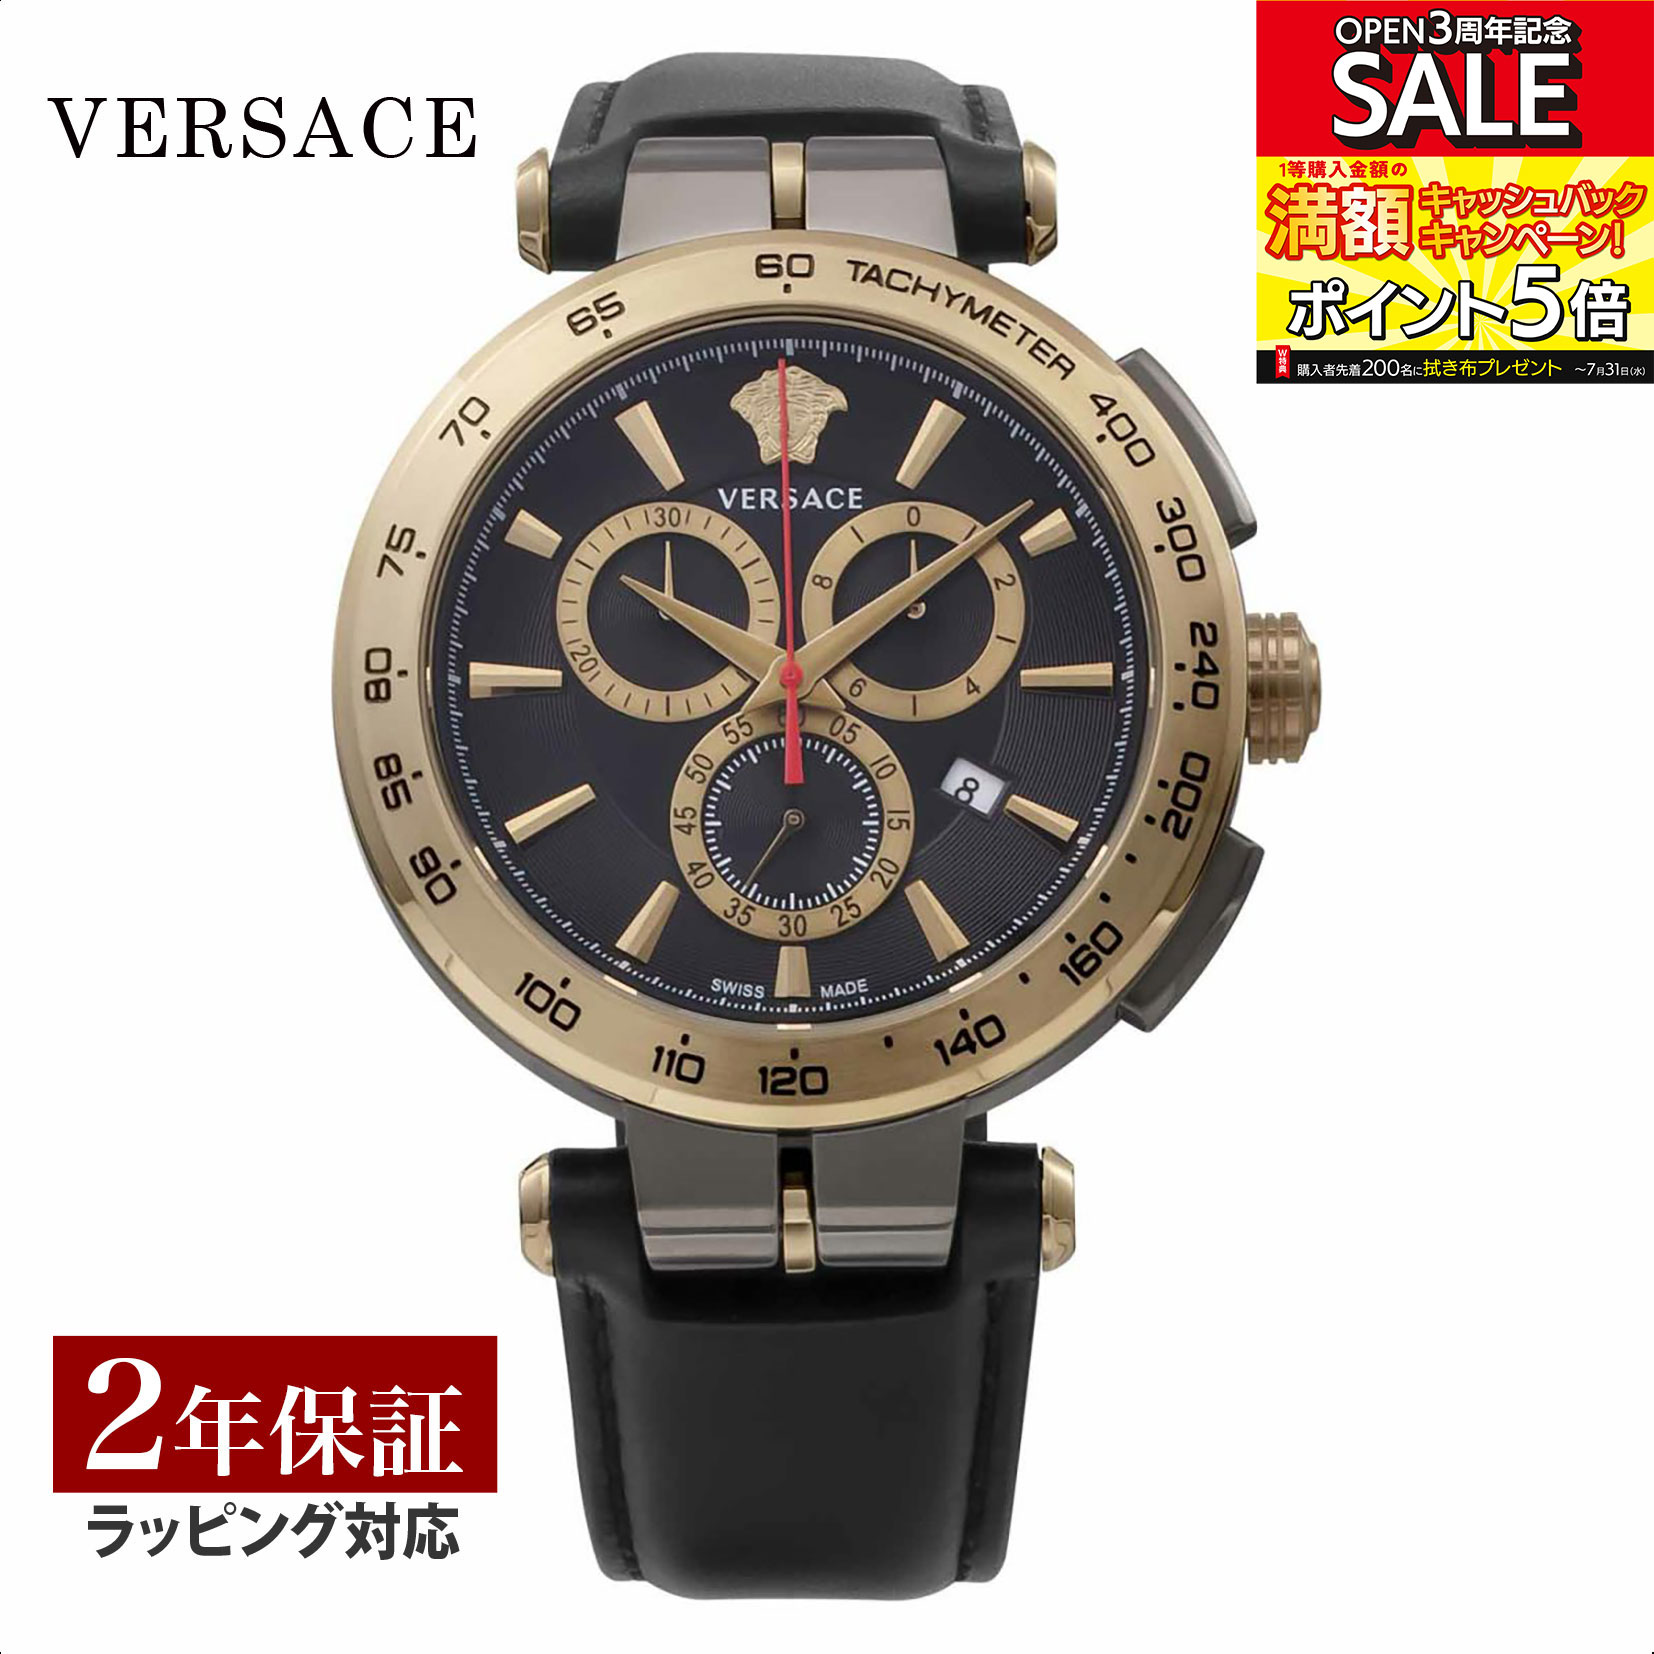 ヴェルサーチ 腕時計（メンズ） ヴェルサーチェ ヴェルサーチ VERSACE メンズ 時計 AION Chrono gent クォーツ ブラック VE6CA0323 時計 腕時計 高級腕時計 ブランド